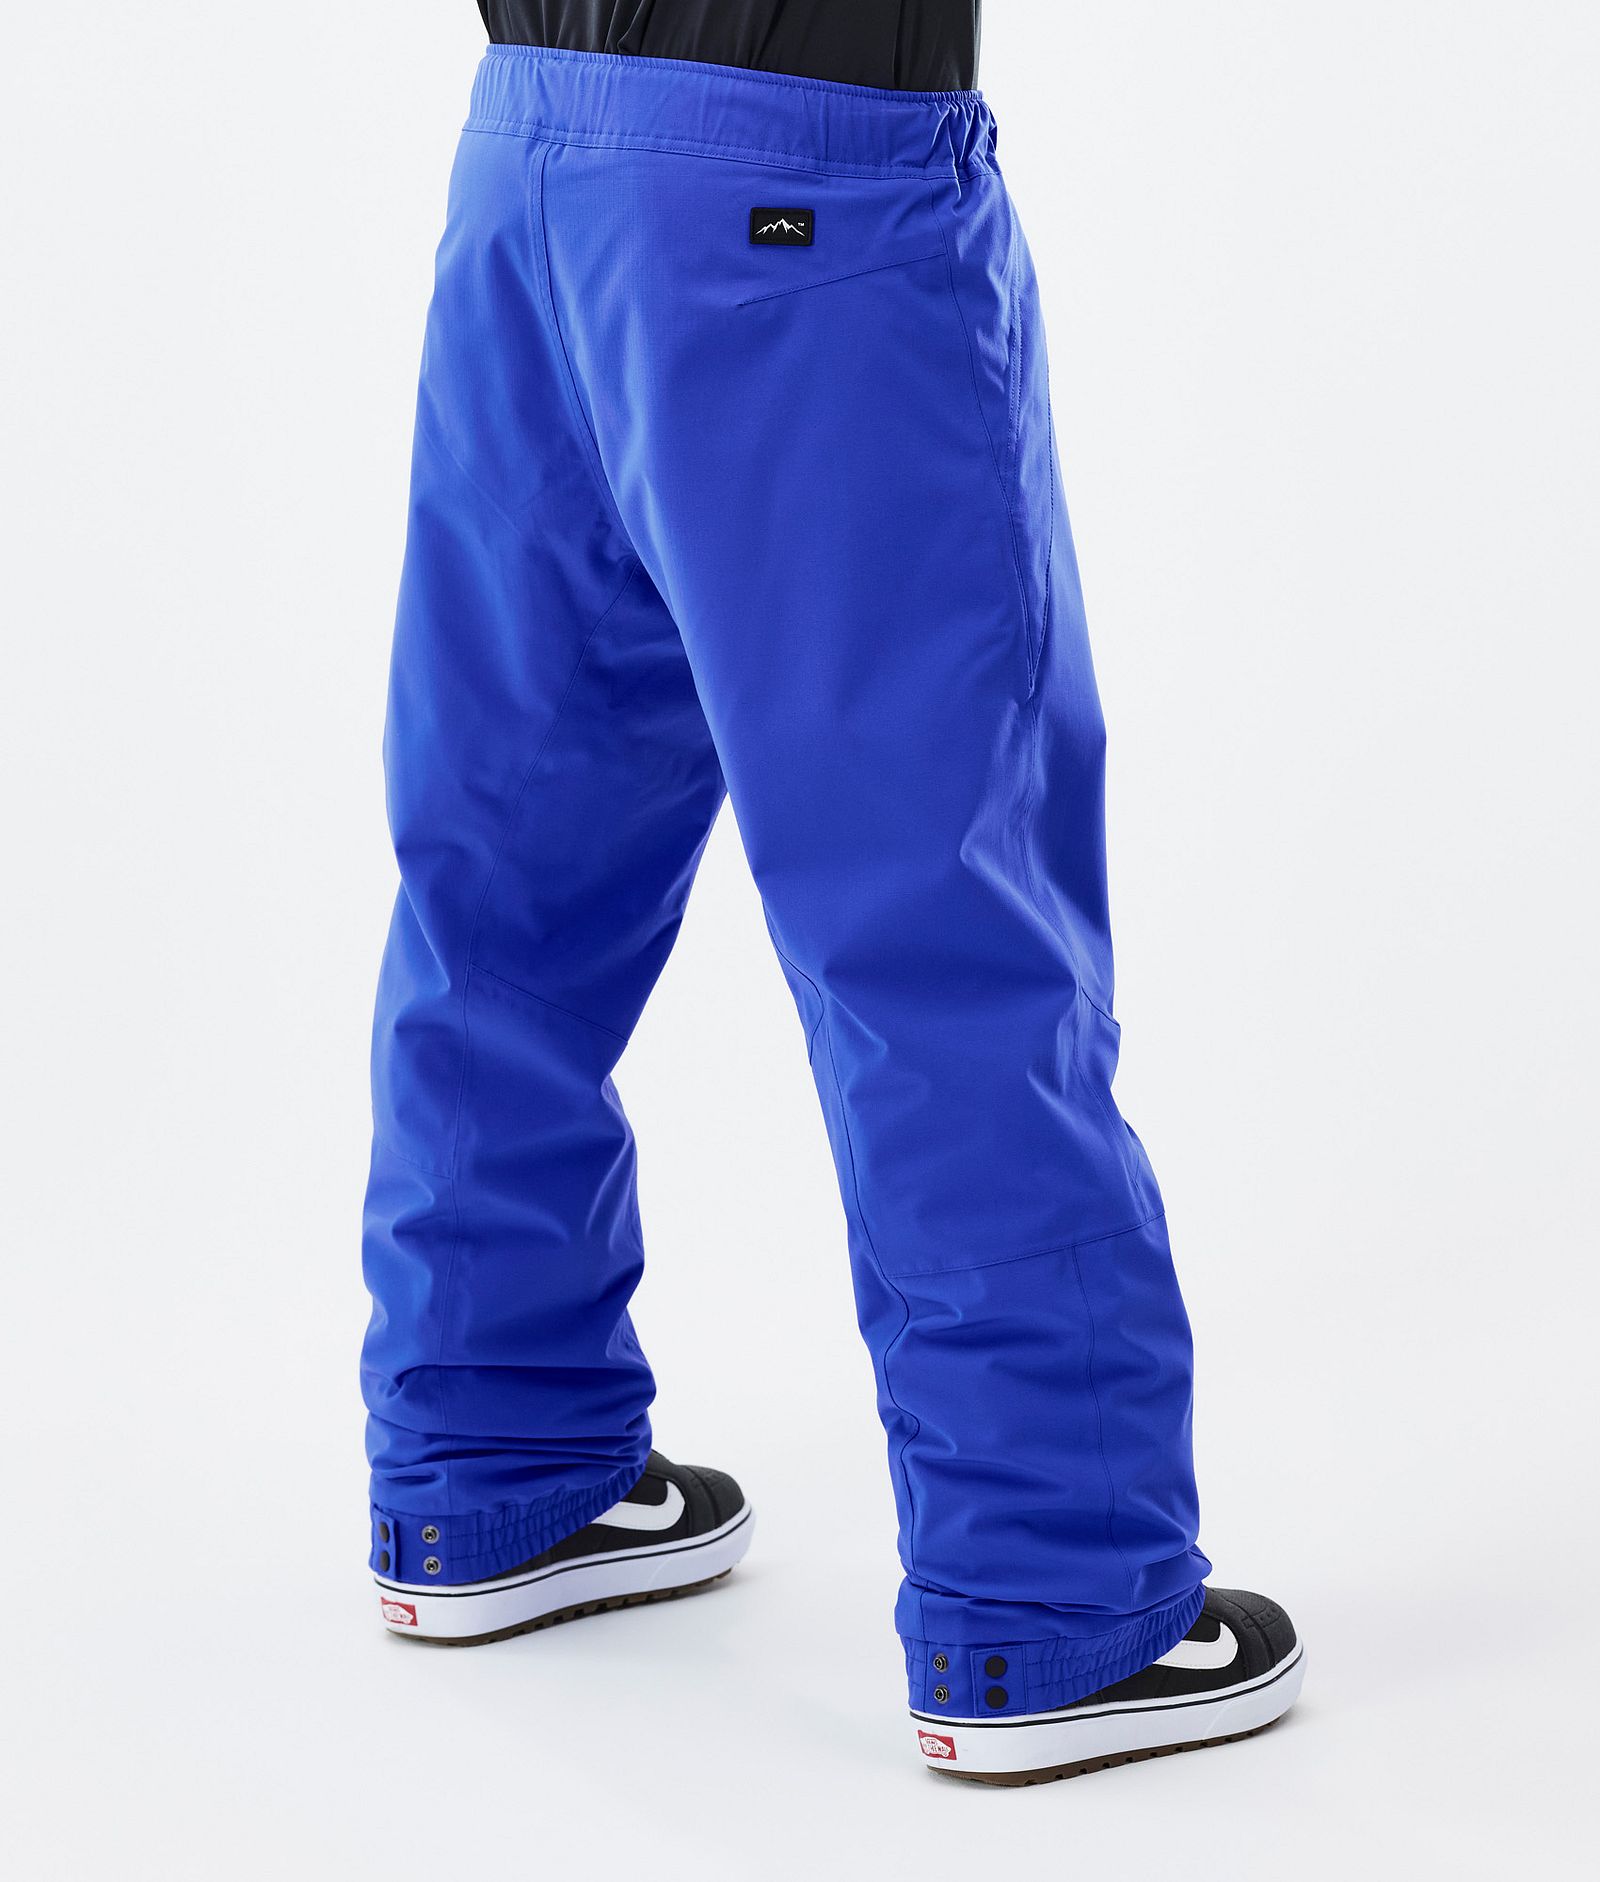 Dope Blizzard Spodnie Snowboardowe Mężczyźni Cobalt Blue